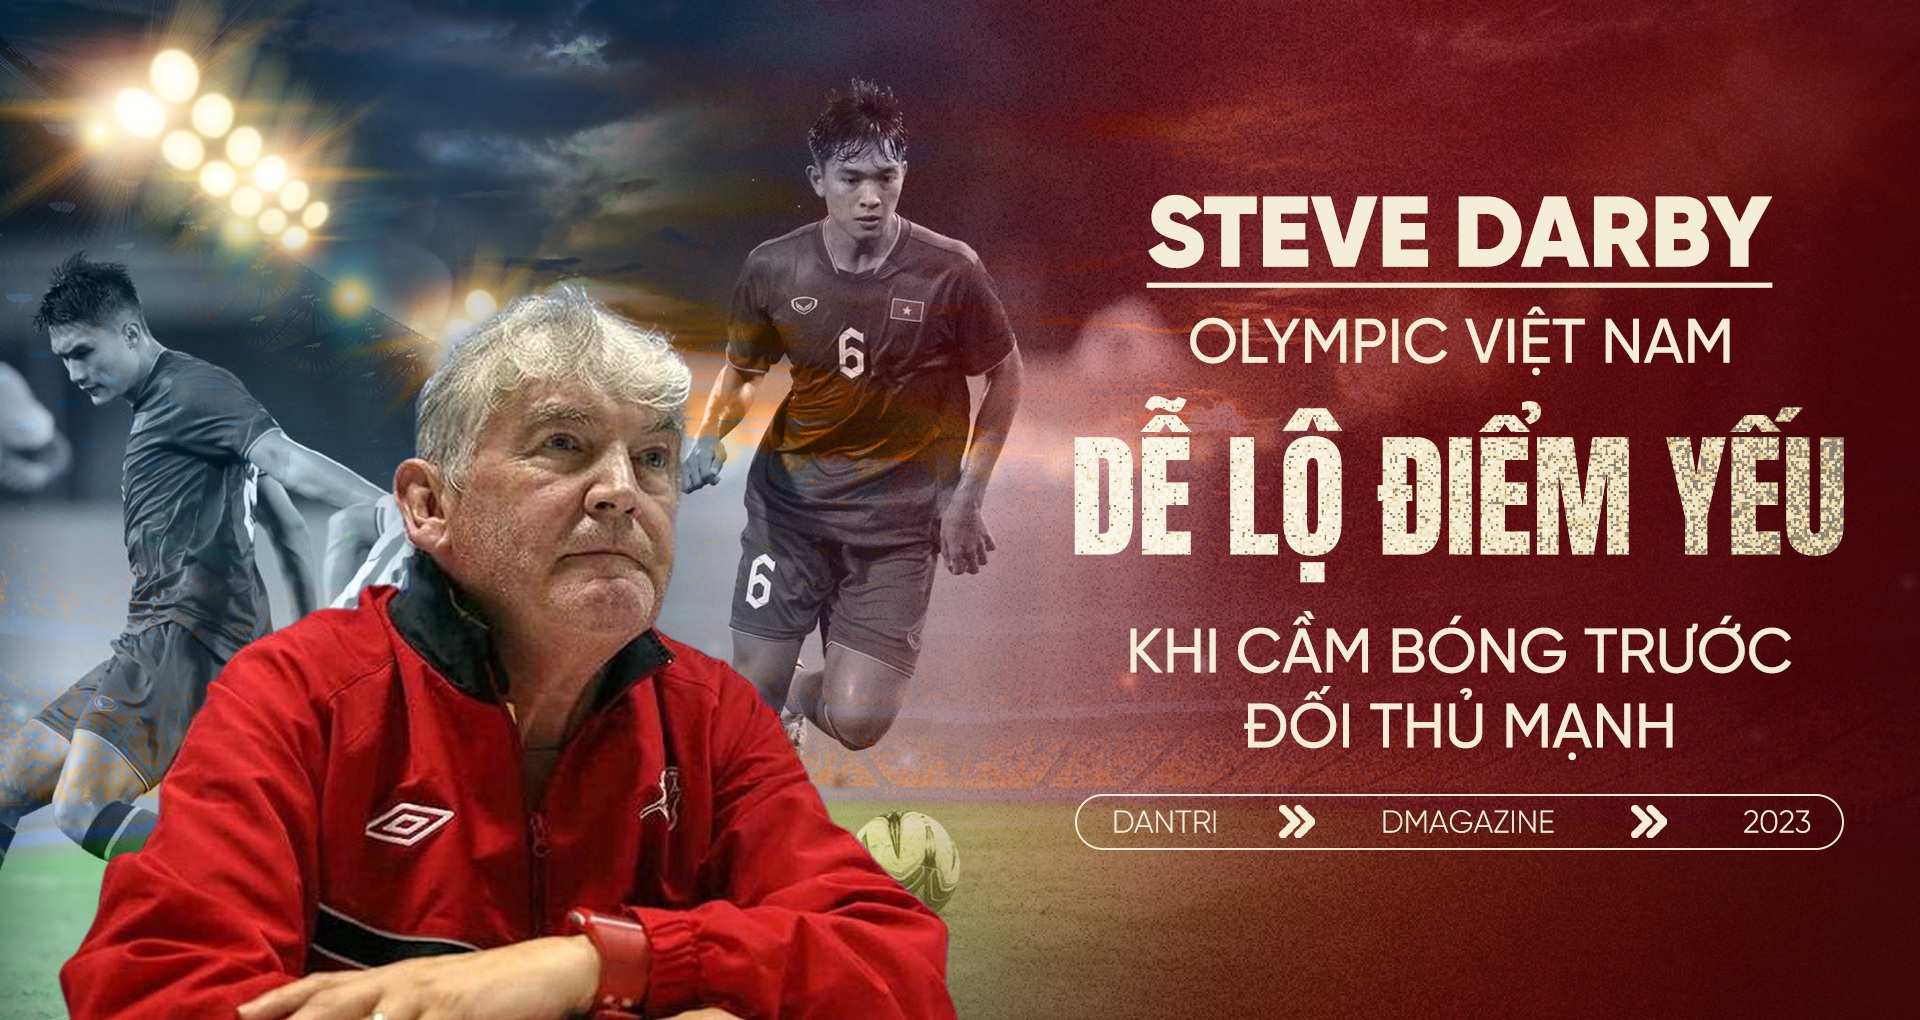 Steve Darby: "Olympic Việt Nam dễ lộ điểm yếu cầm bóng trước đối thủ mạnh"